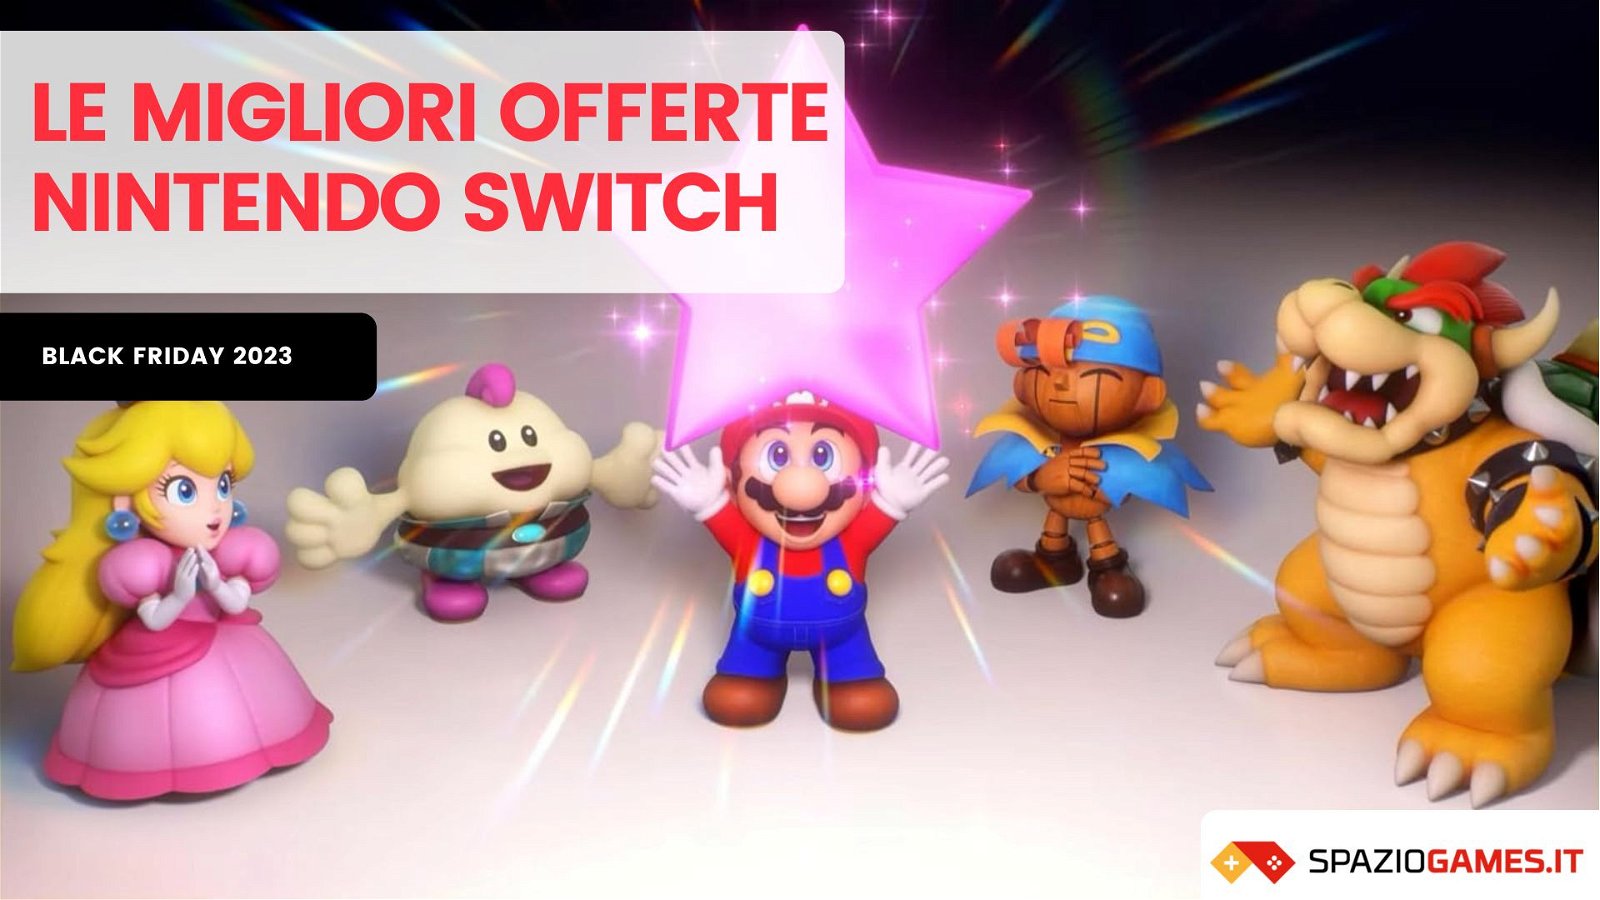 Le migliori offerte per Nintendo Switch del Black Friday 2023